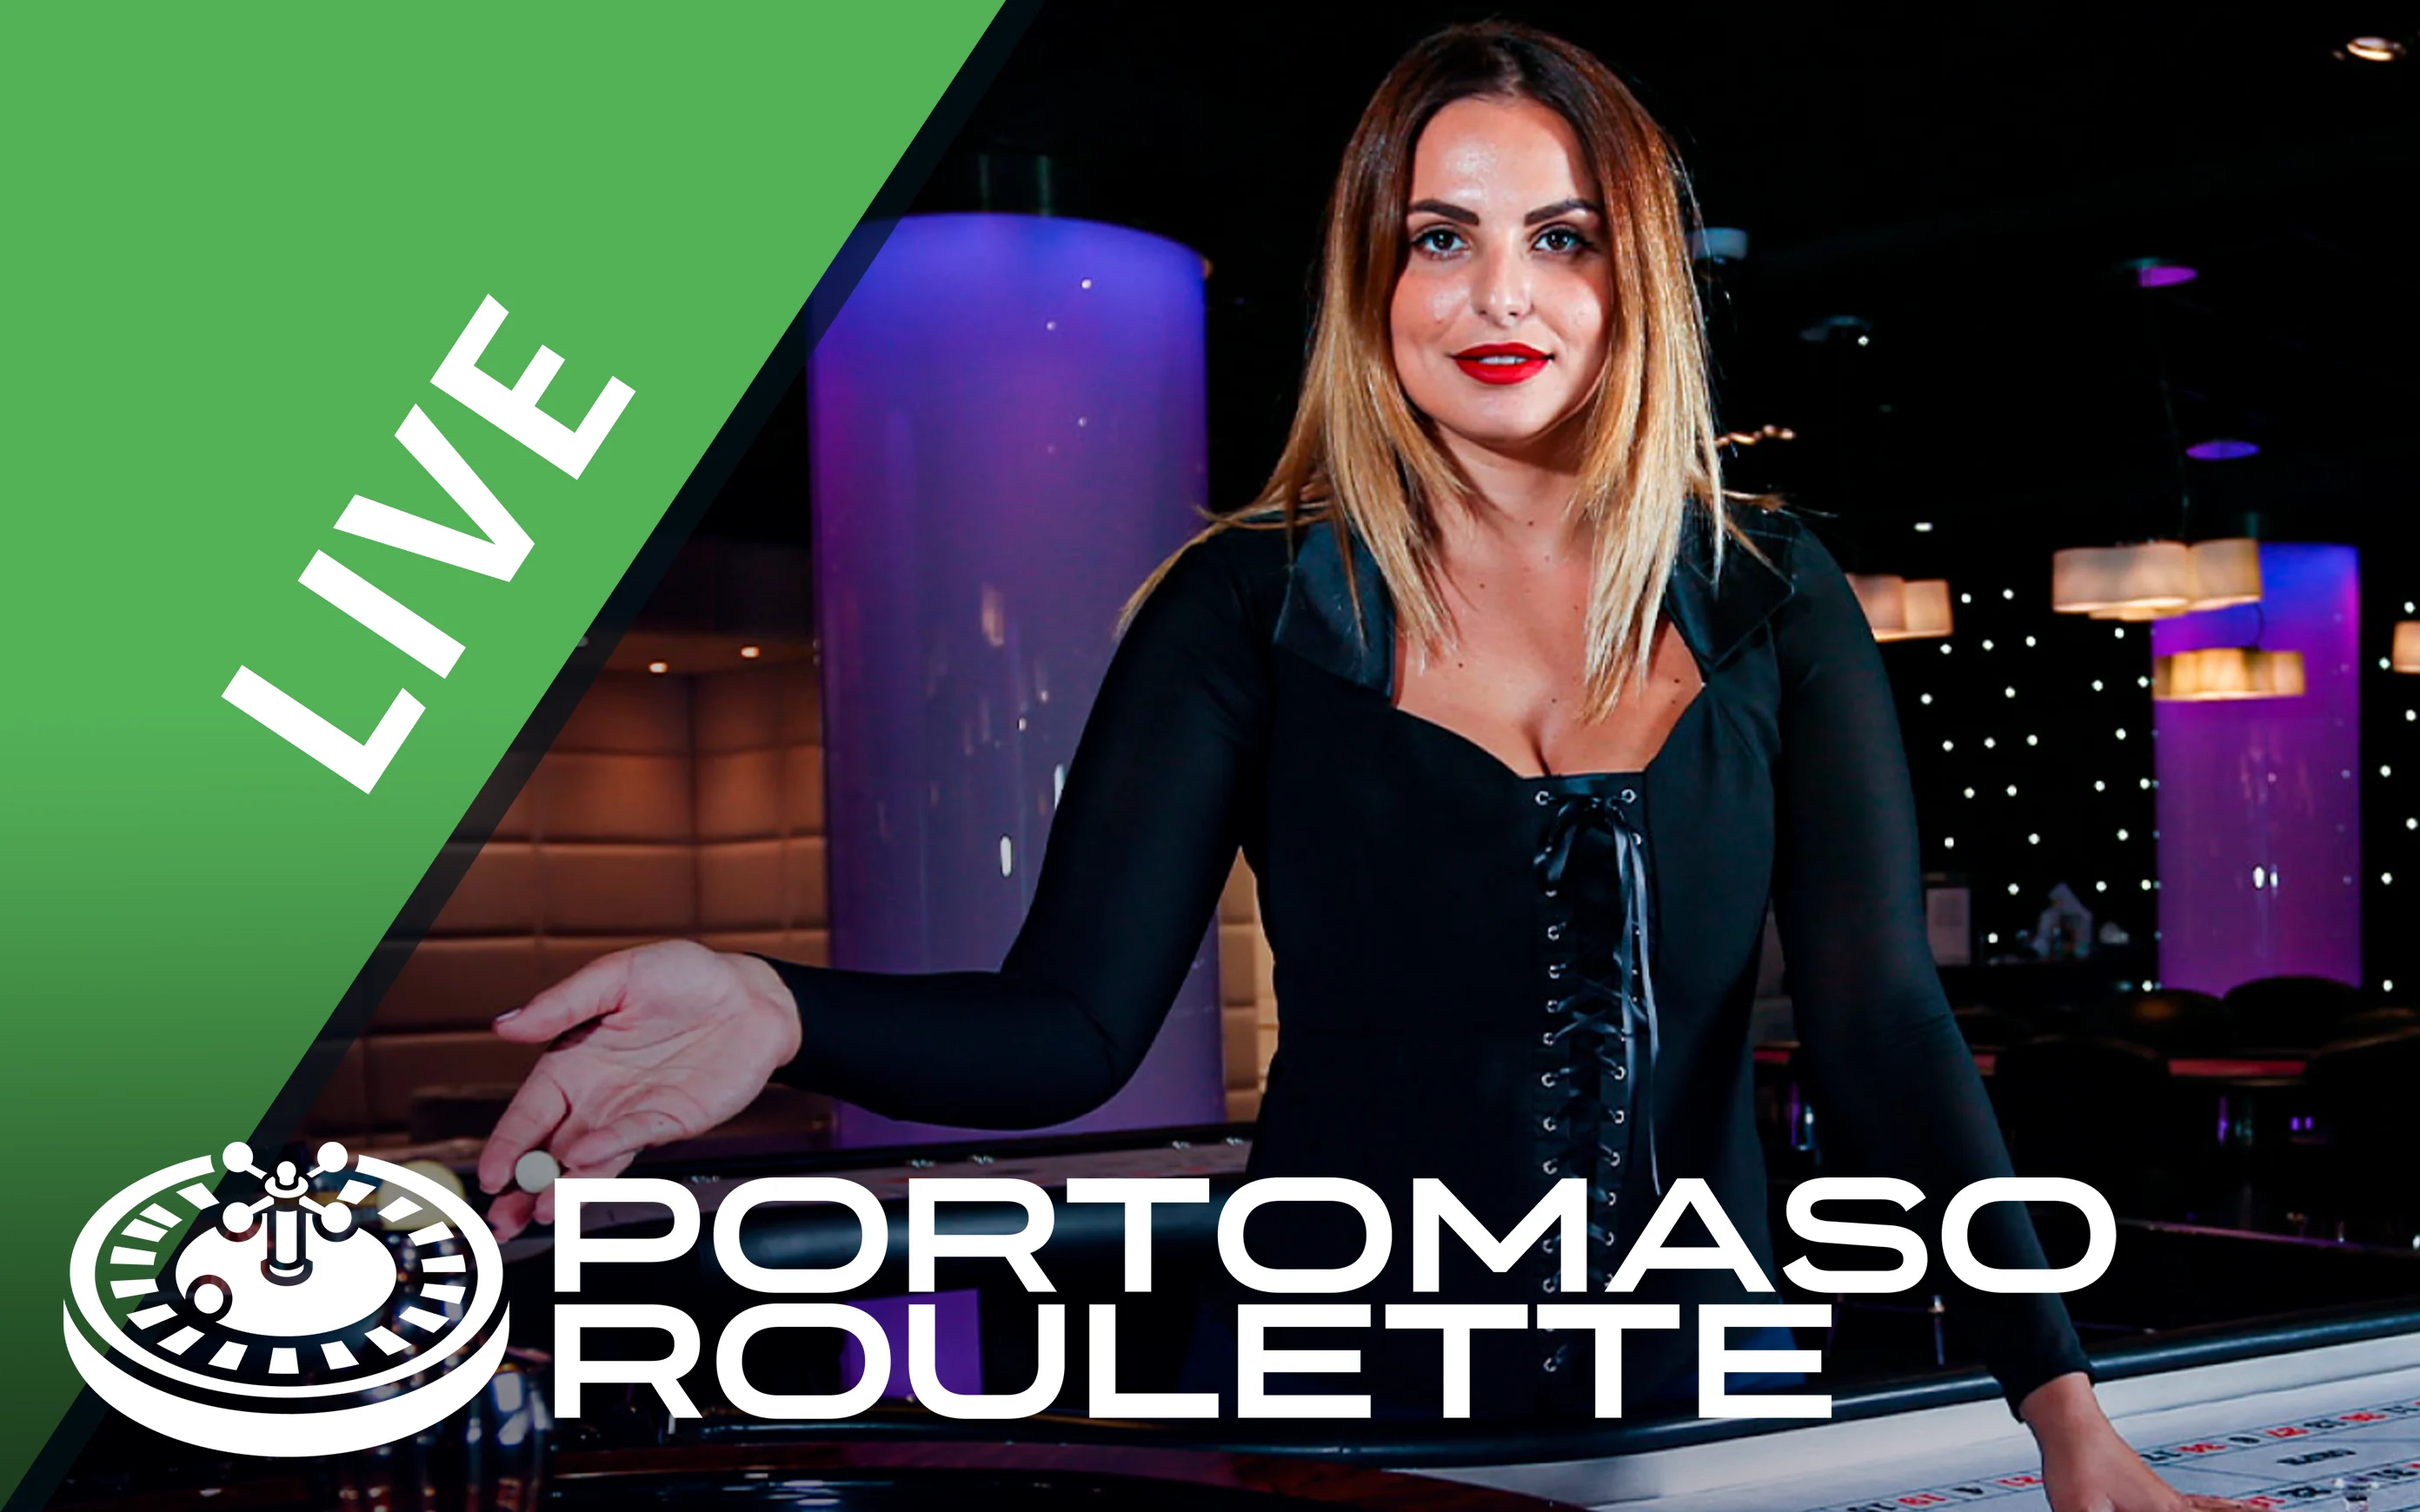 Speel Portomaso Roulette op Starcasino.be online casino